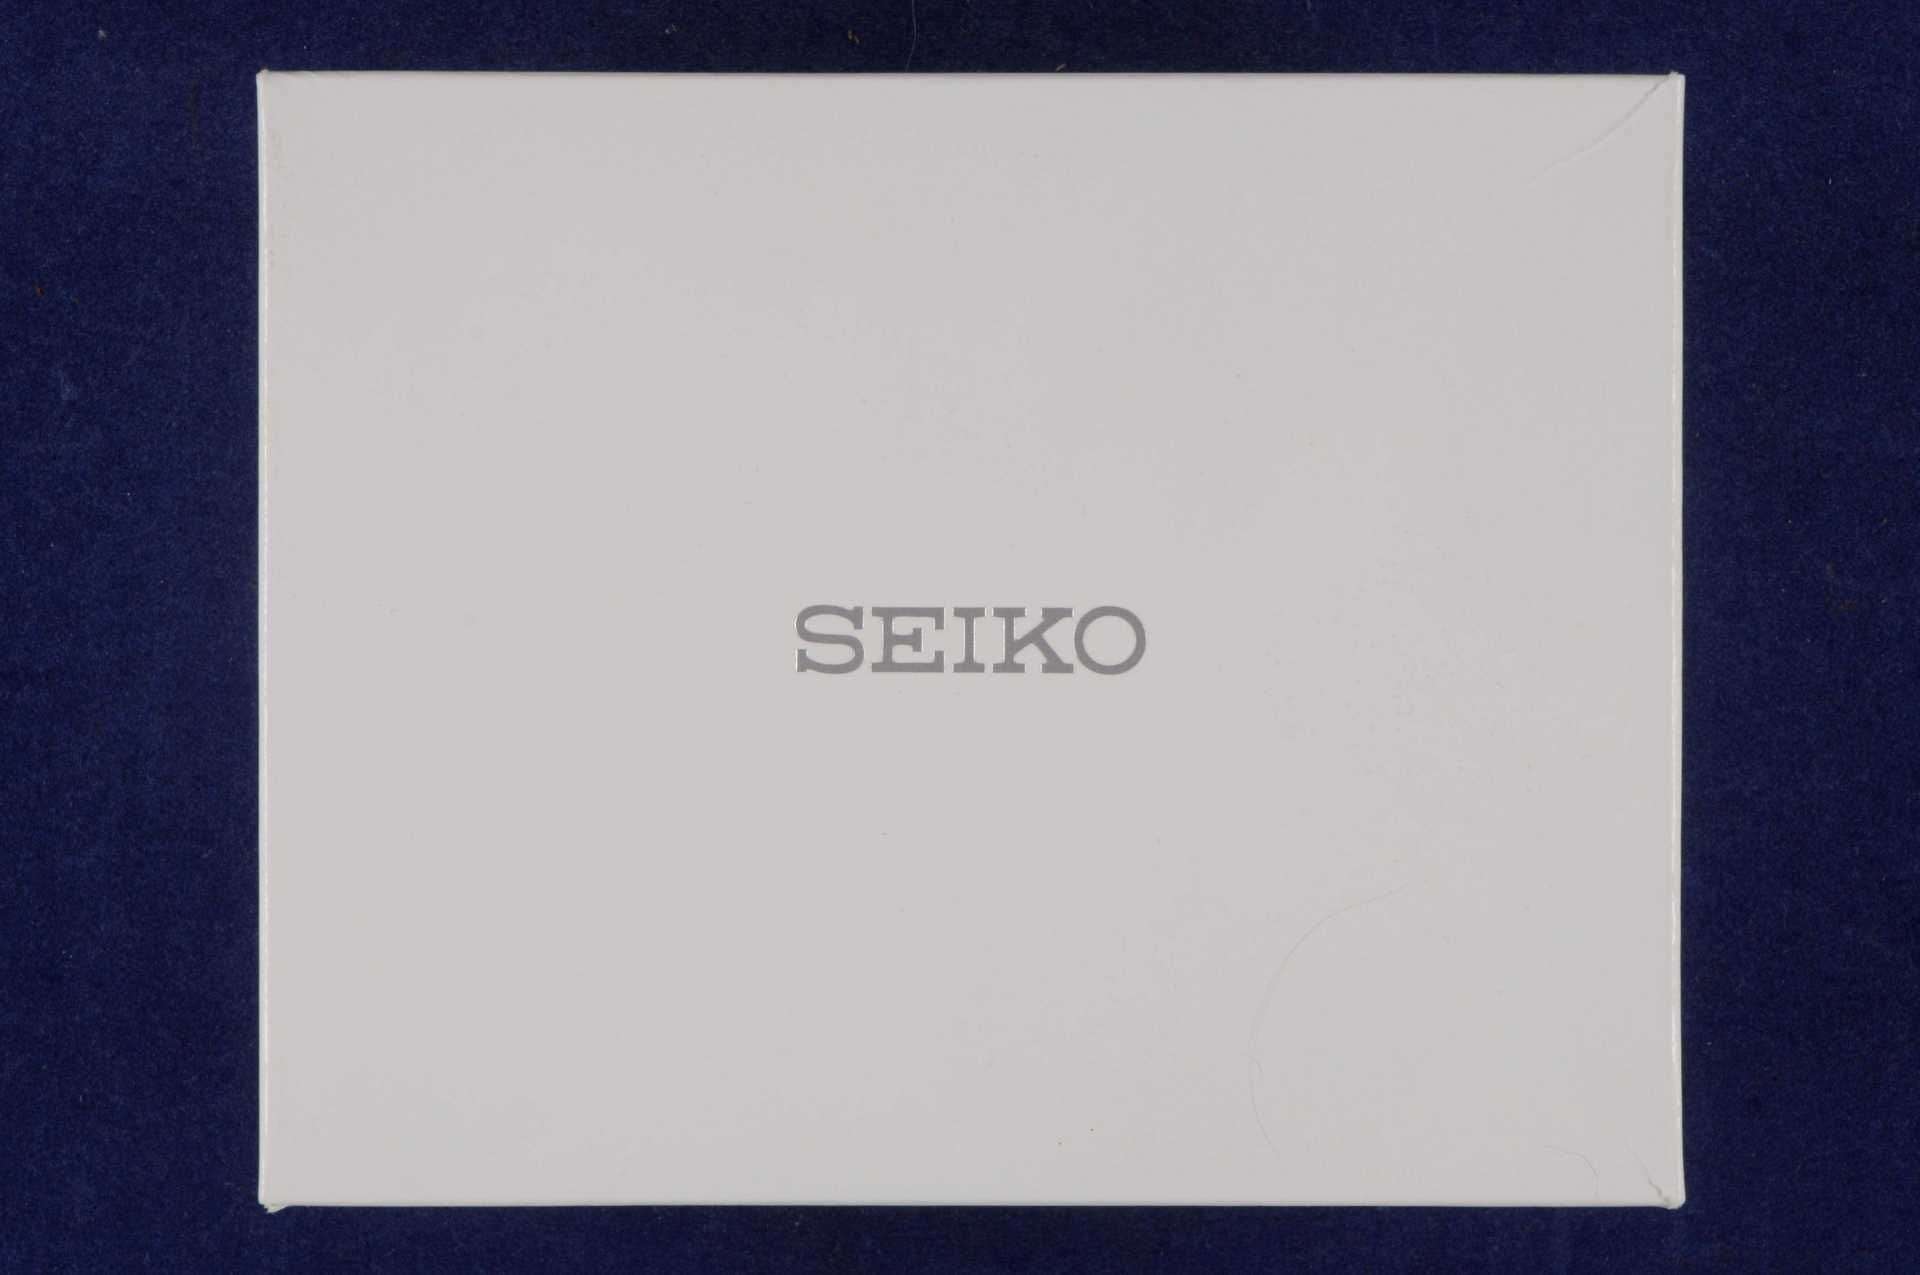 Seiko Prospex \Save The Ocean\ Herren Armbanduhr. Special Edition, Ca. 45mm, Edelstahl, Saphirglas, - Bild 5 aus 5